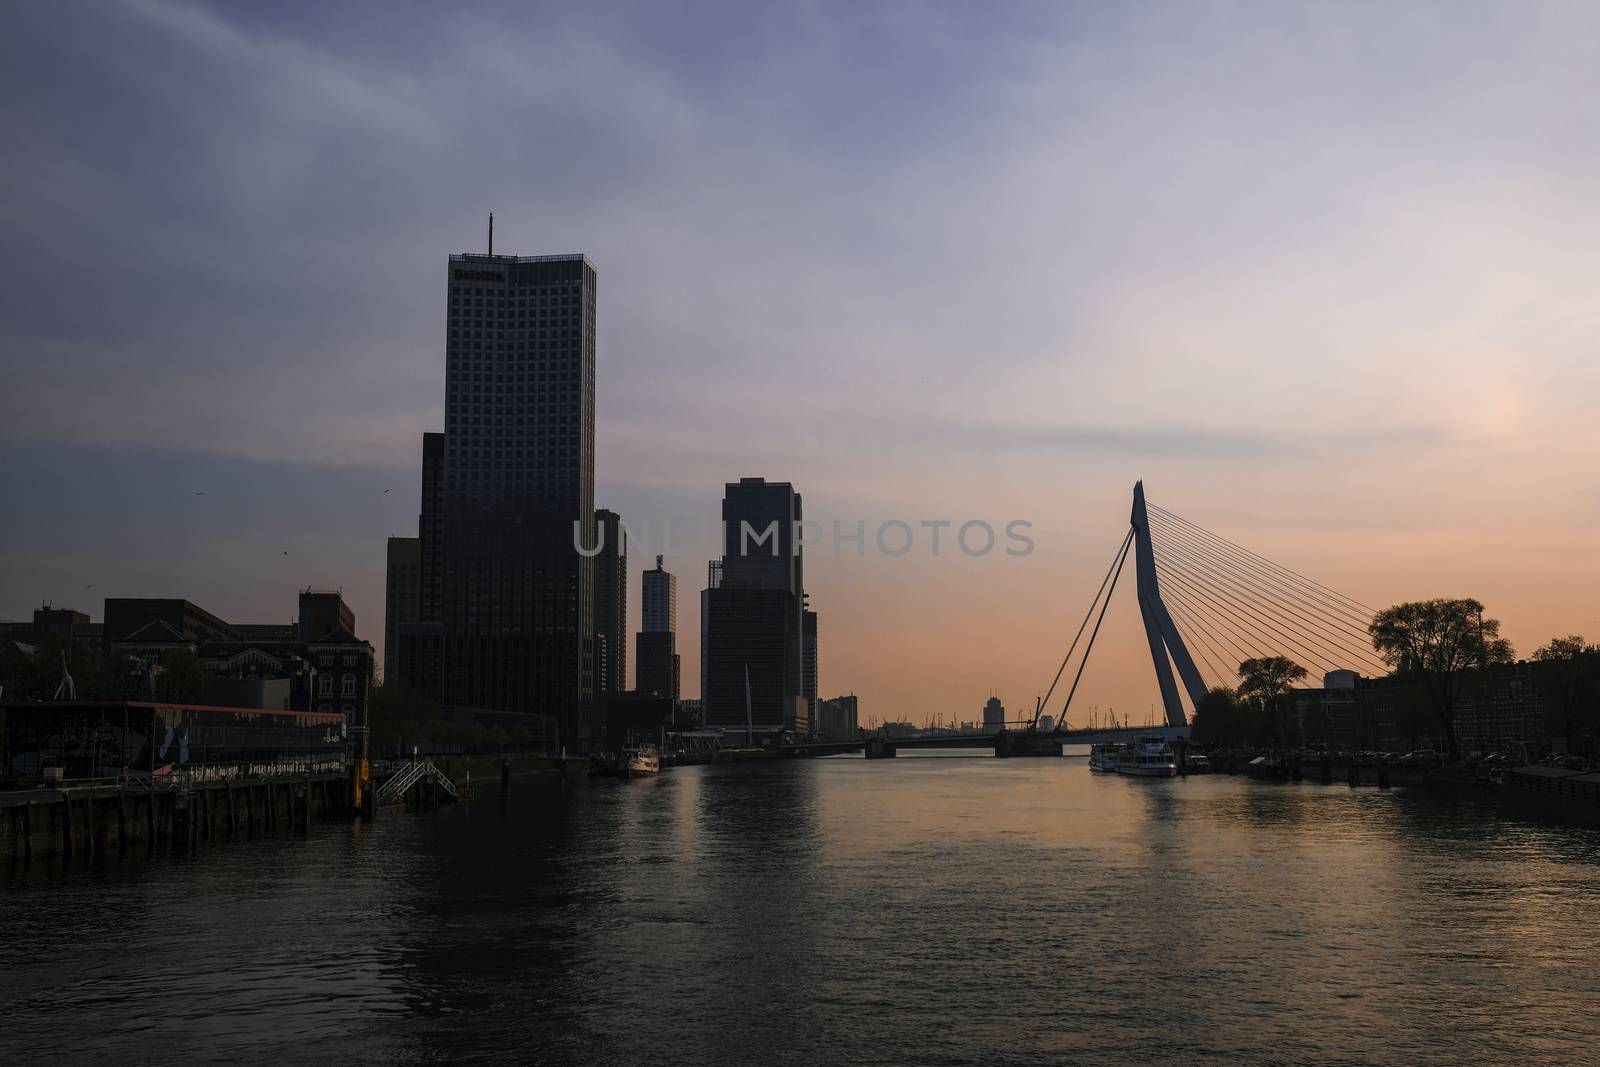 City of Rotterdam_Skyline with Erasmusbrug bridge at sundown in evening in Rotterdam, Netherlands